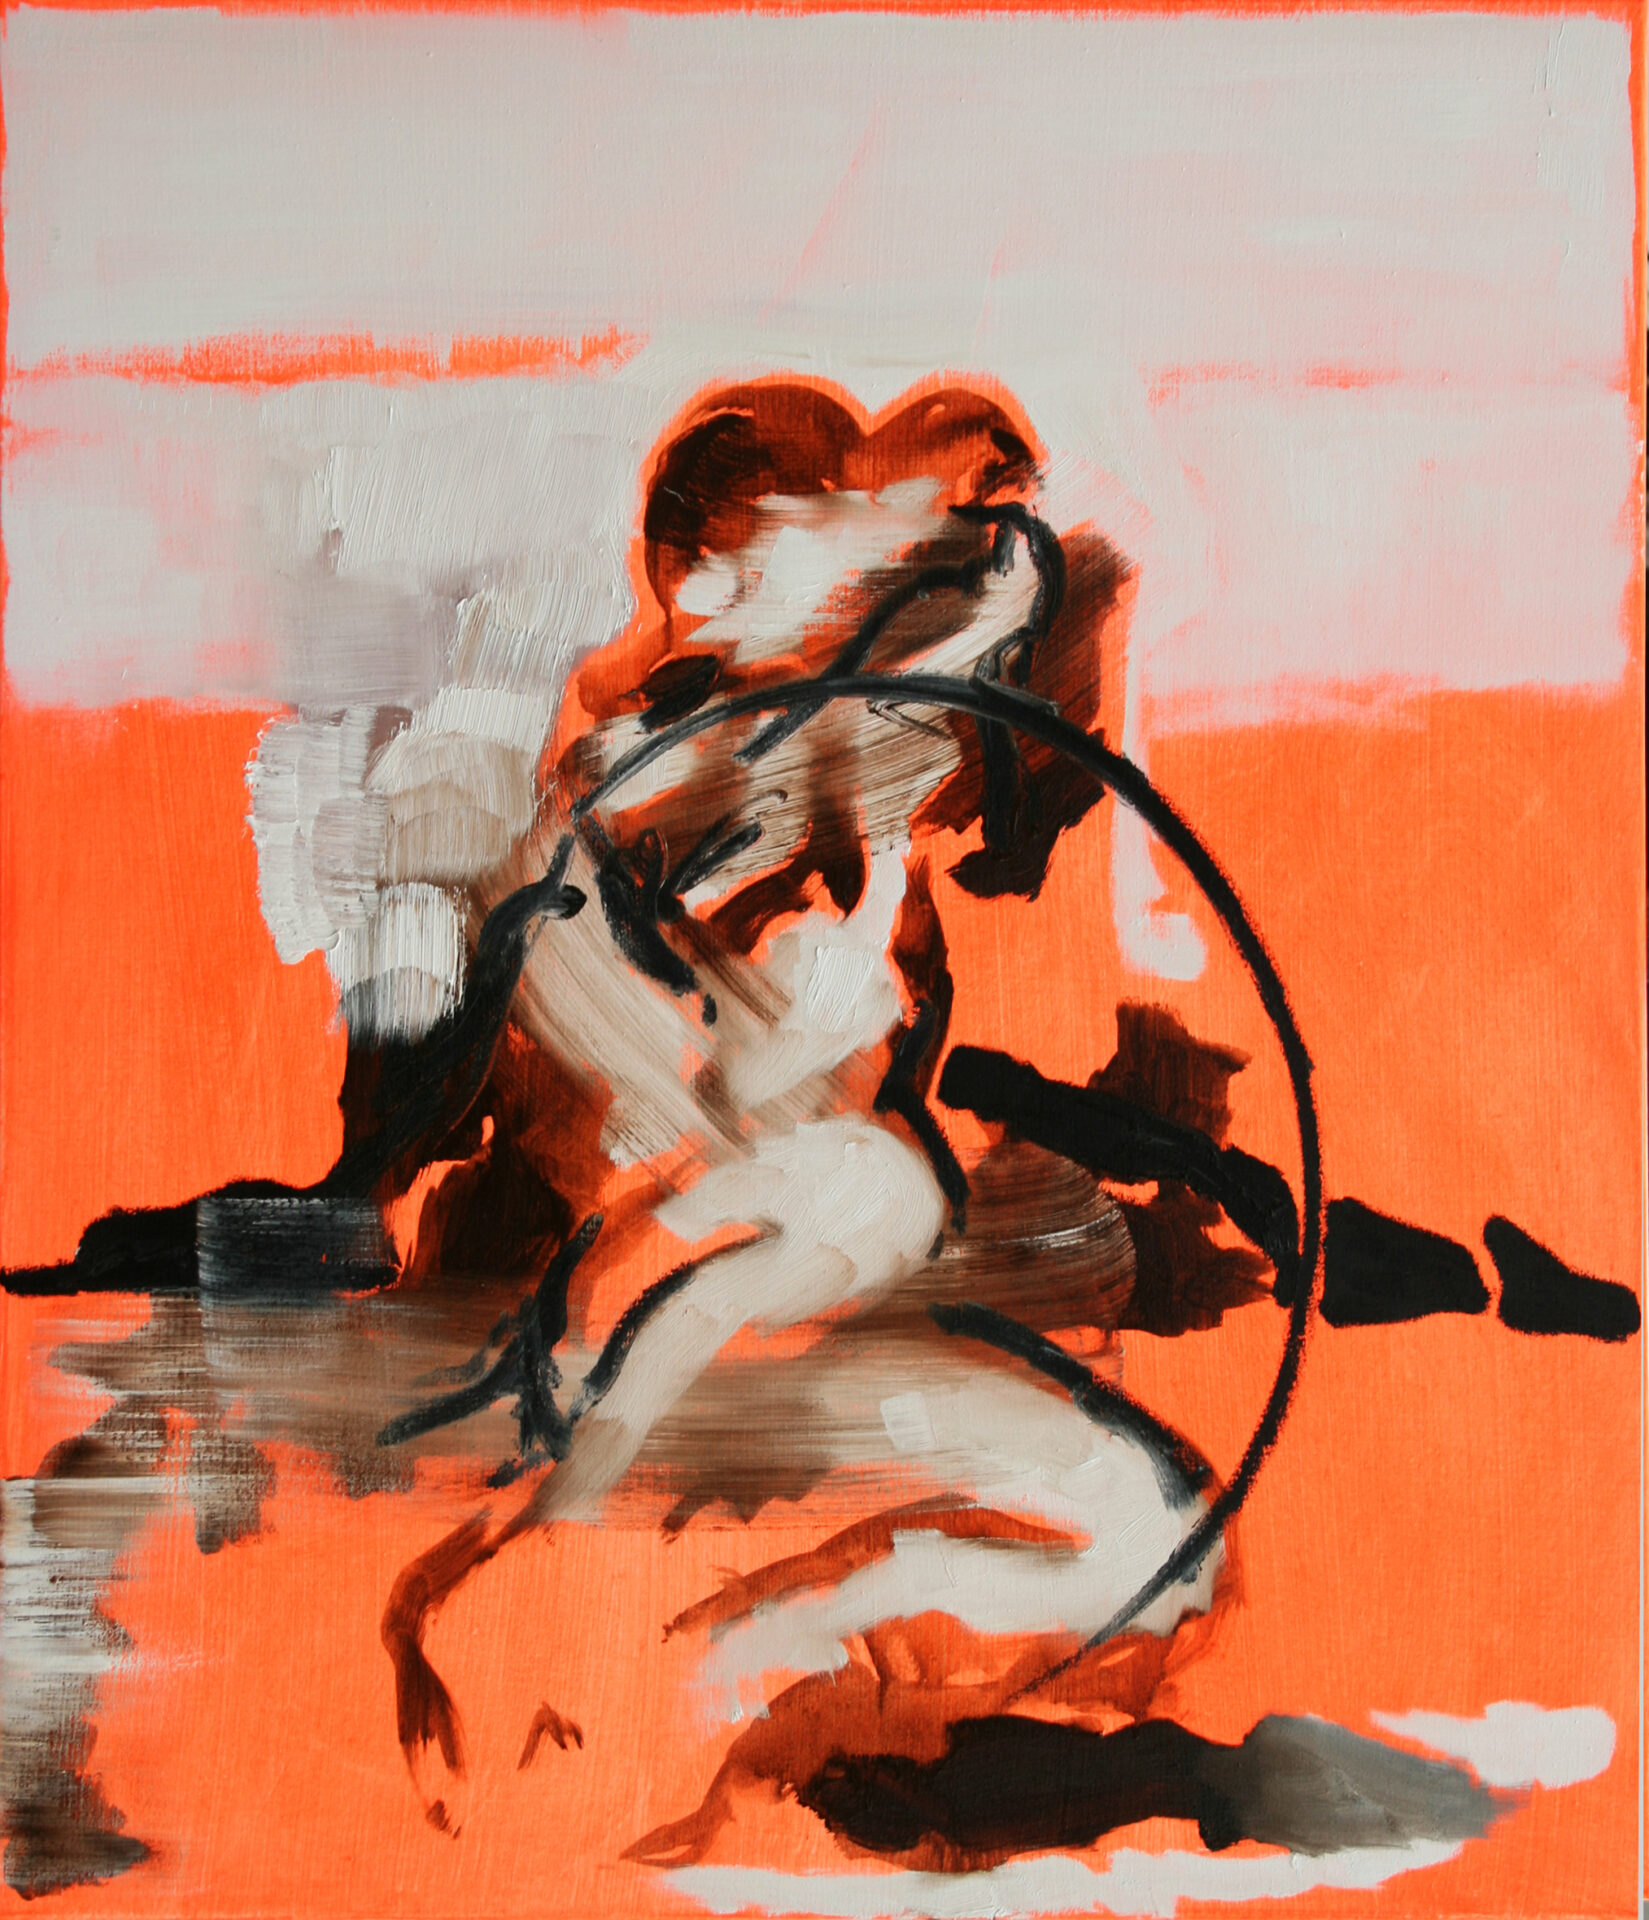 Daniel Beer, SCENIC 2018-15, 100 x 85 cm, Öl auf Leinwand, 2018